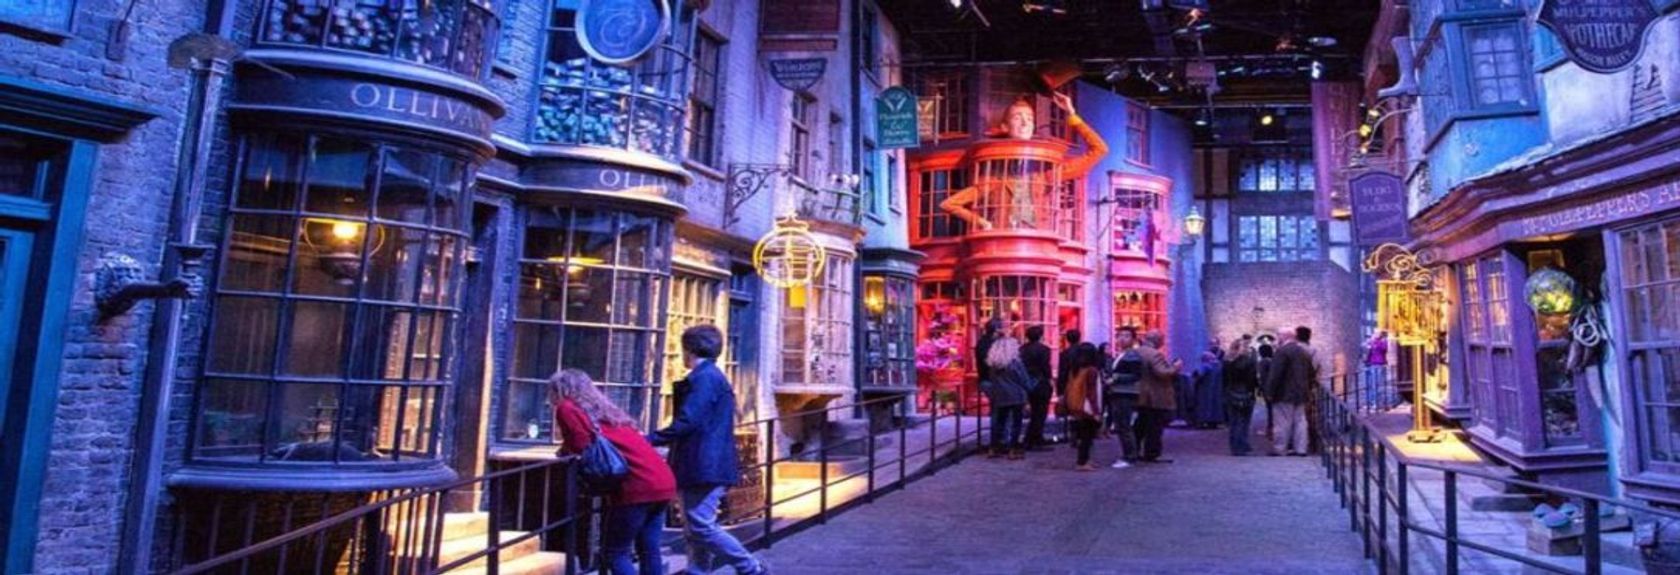 Para completar sua experiência Harry Potter em Londres, uma visita ao Warner Bros Studio Tour London - The Making of Harry Potter não deve ser perdida